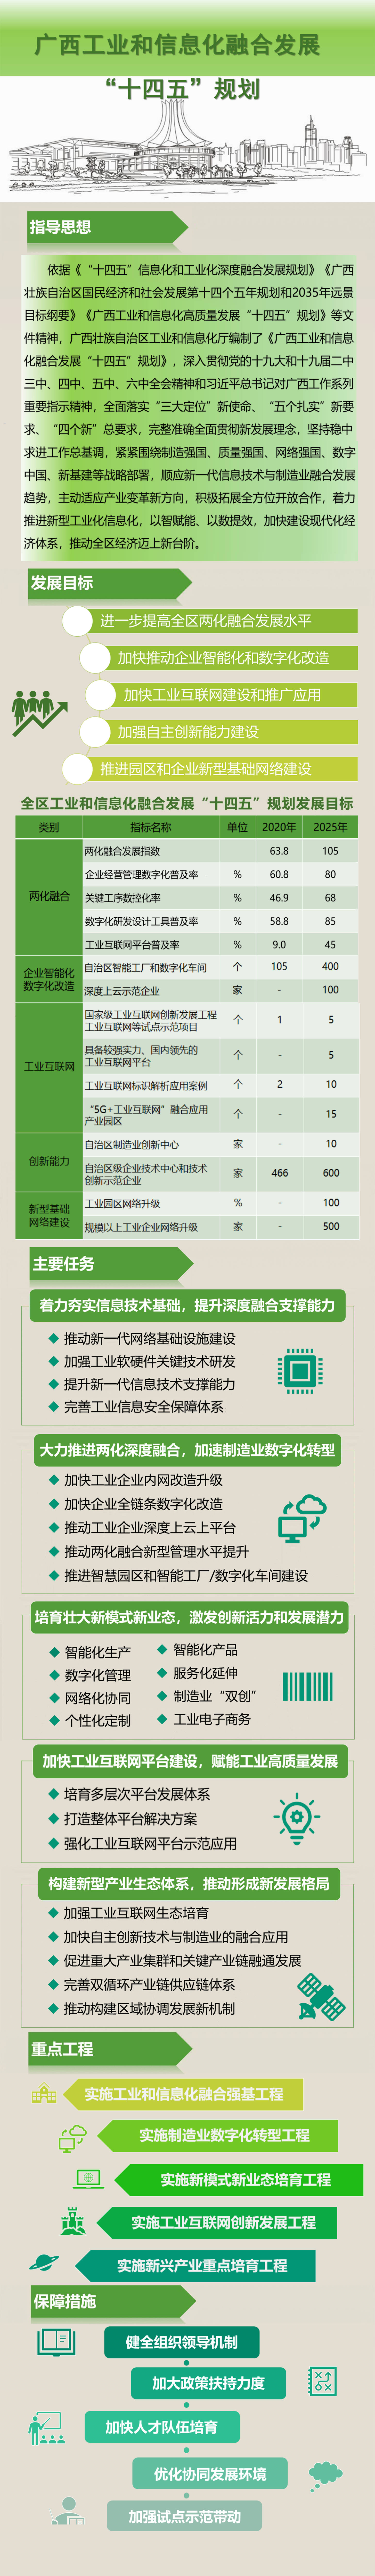 【图解】《广西工业和信息化融合发展“十四五”规划》.jpg